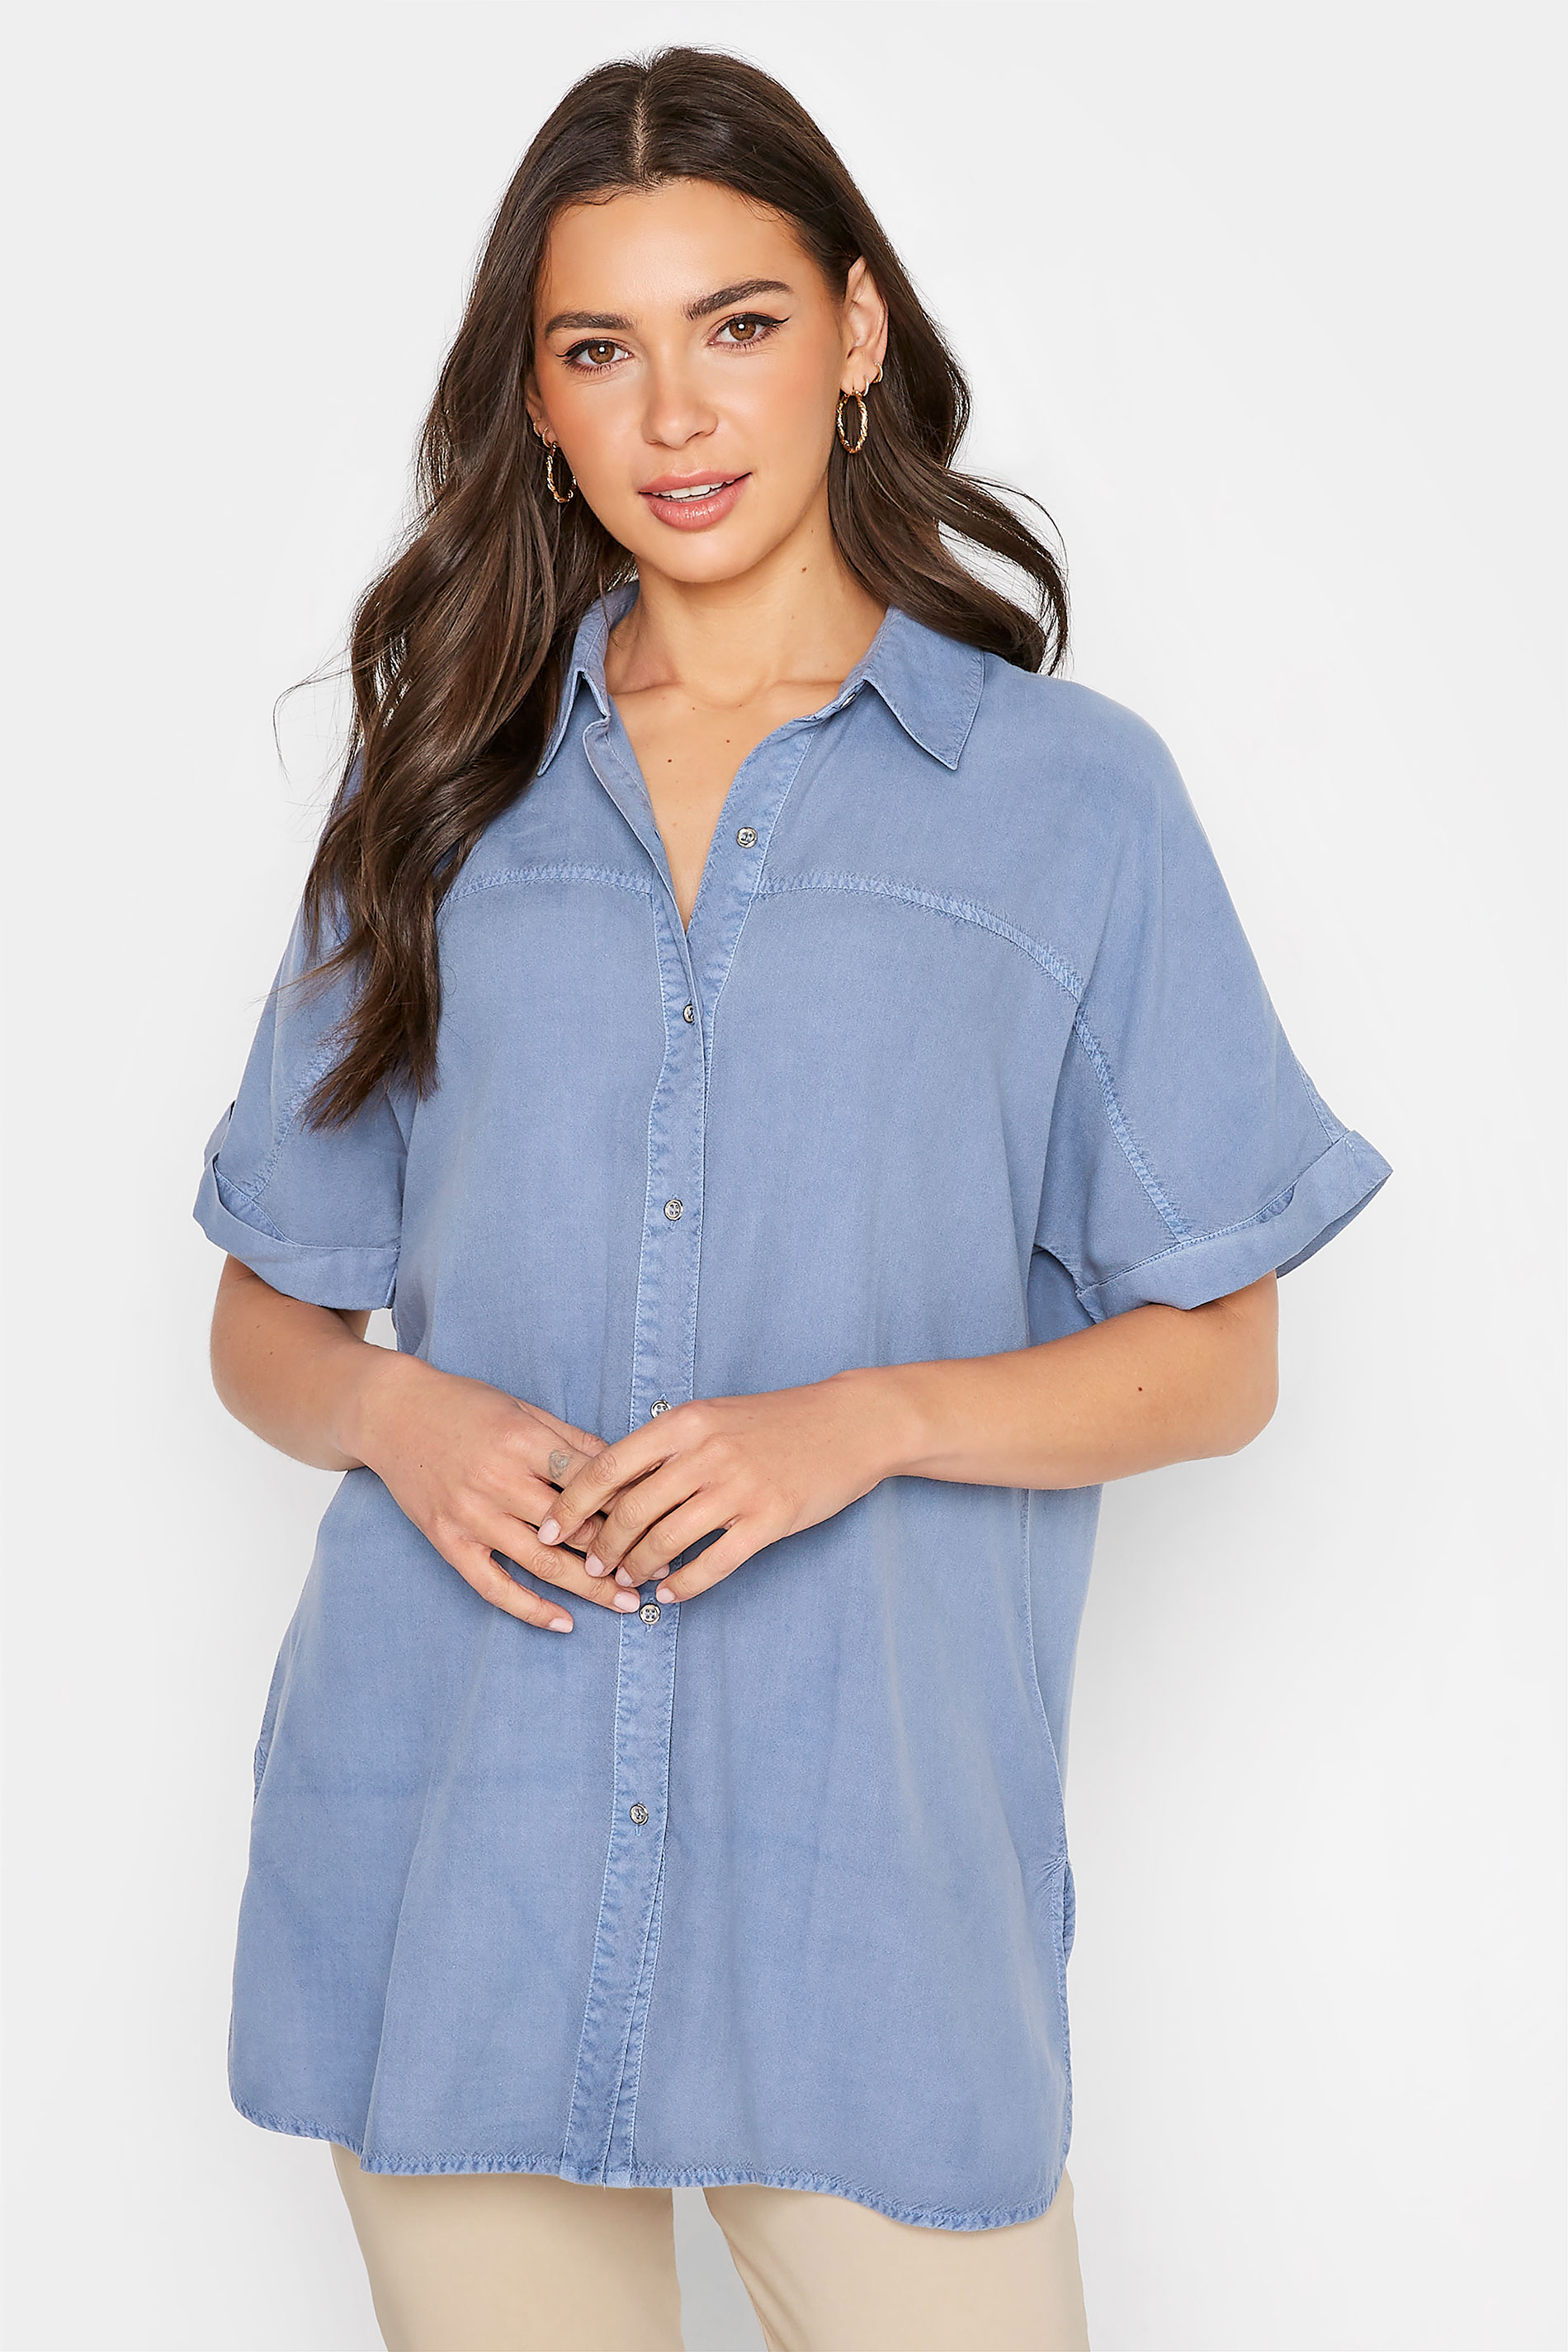 LTS Tall Women's Blue Short Sleeve Denim Shirt | Long Tall Sally 1